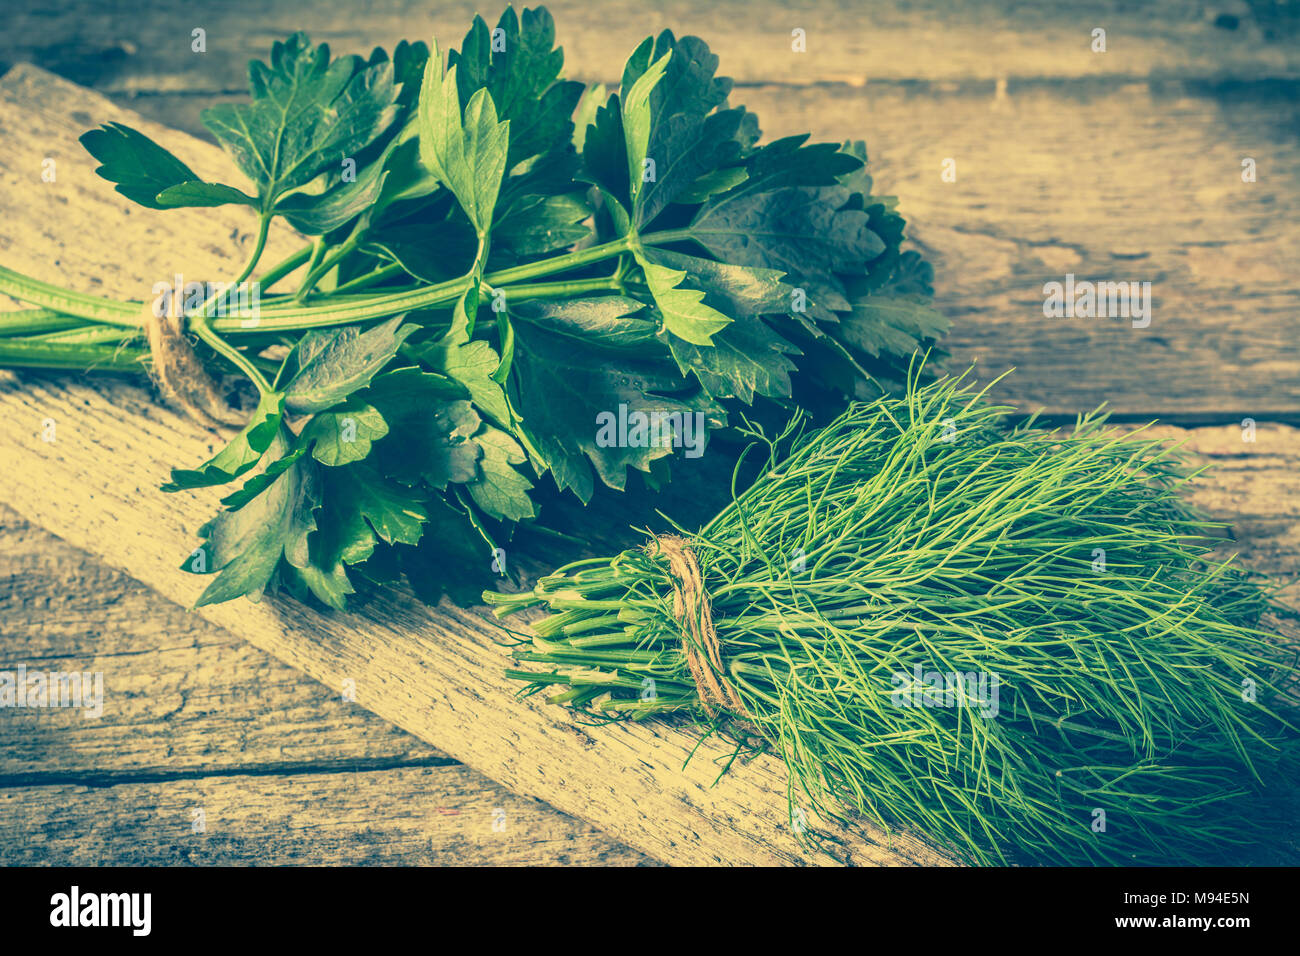 Frische Kräuter, Dill und sellerieblätter Gewürz Zutaten, das Konzept der gesunden Küche, vegetarische Küche Stockfoto